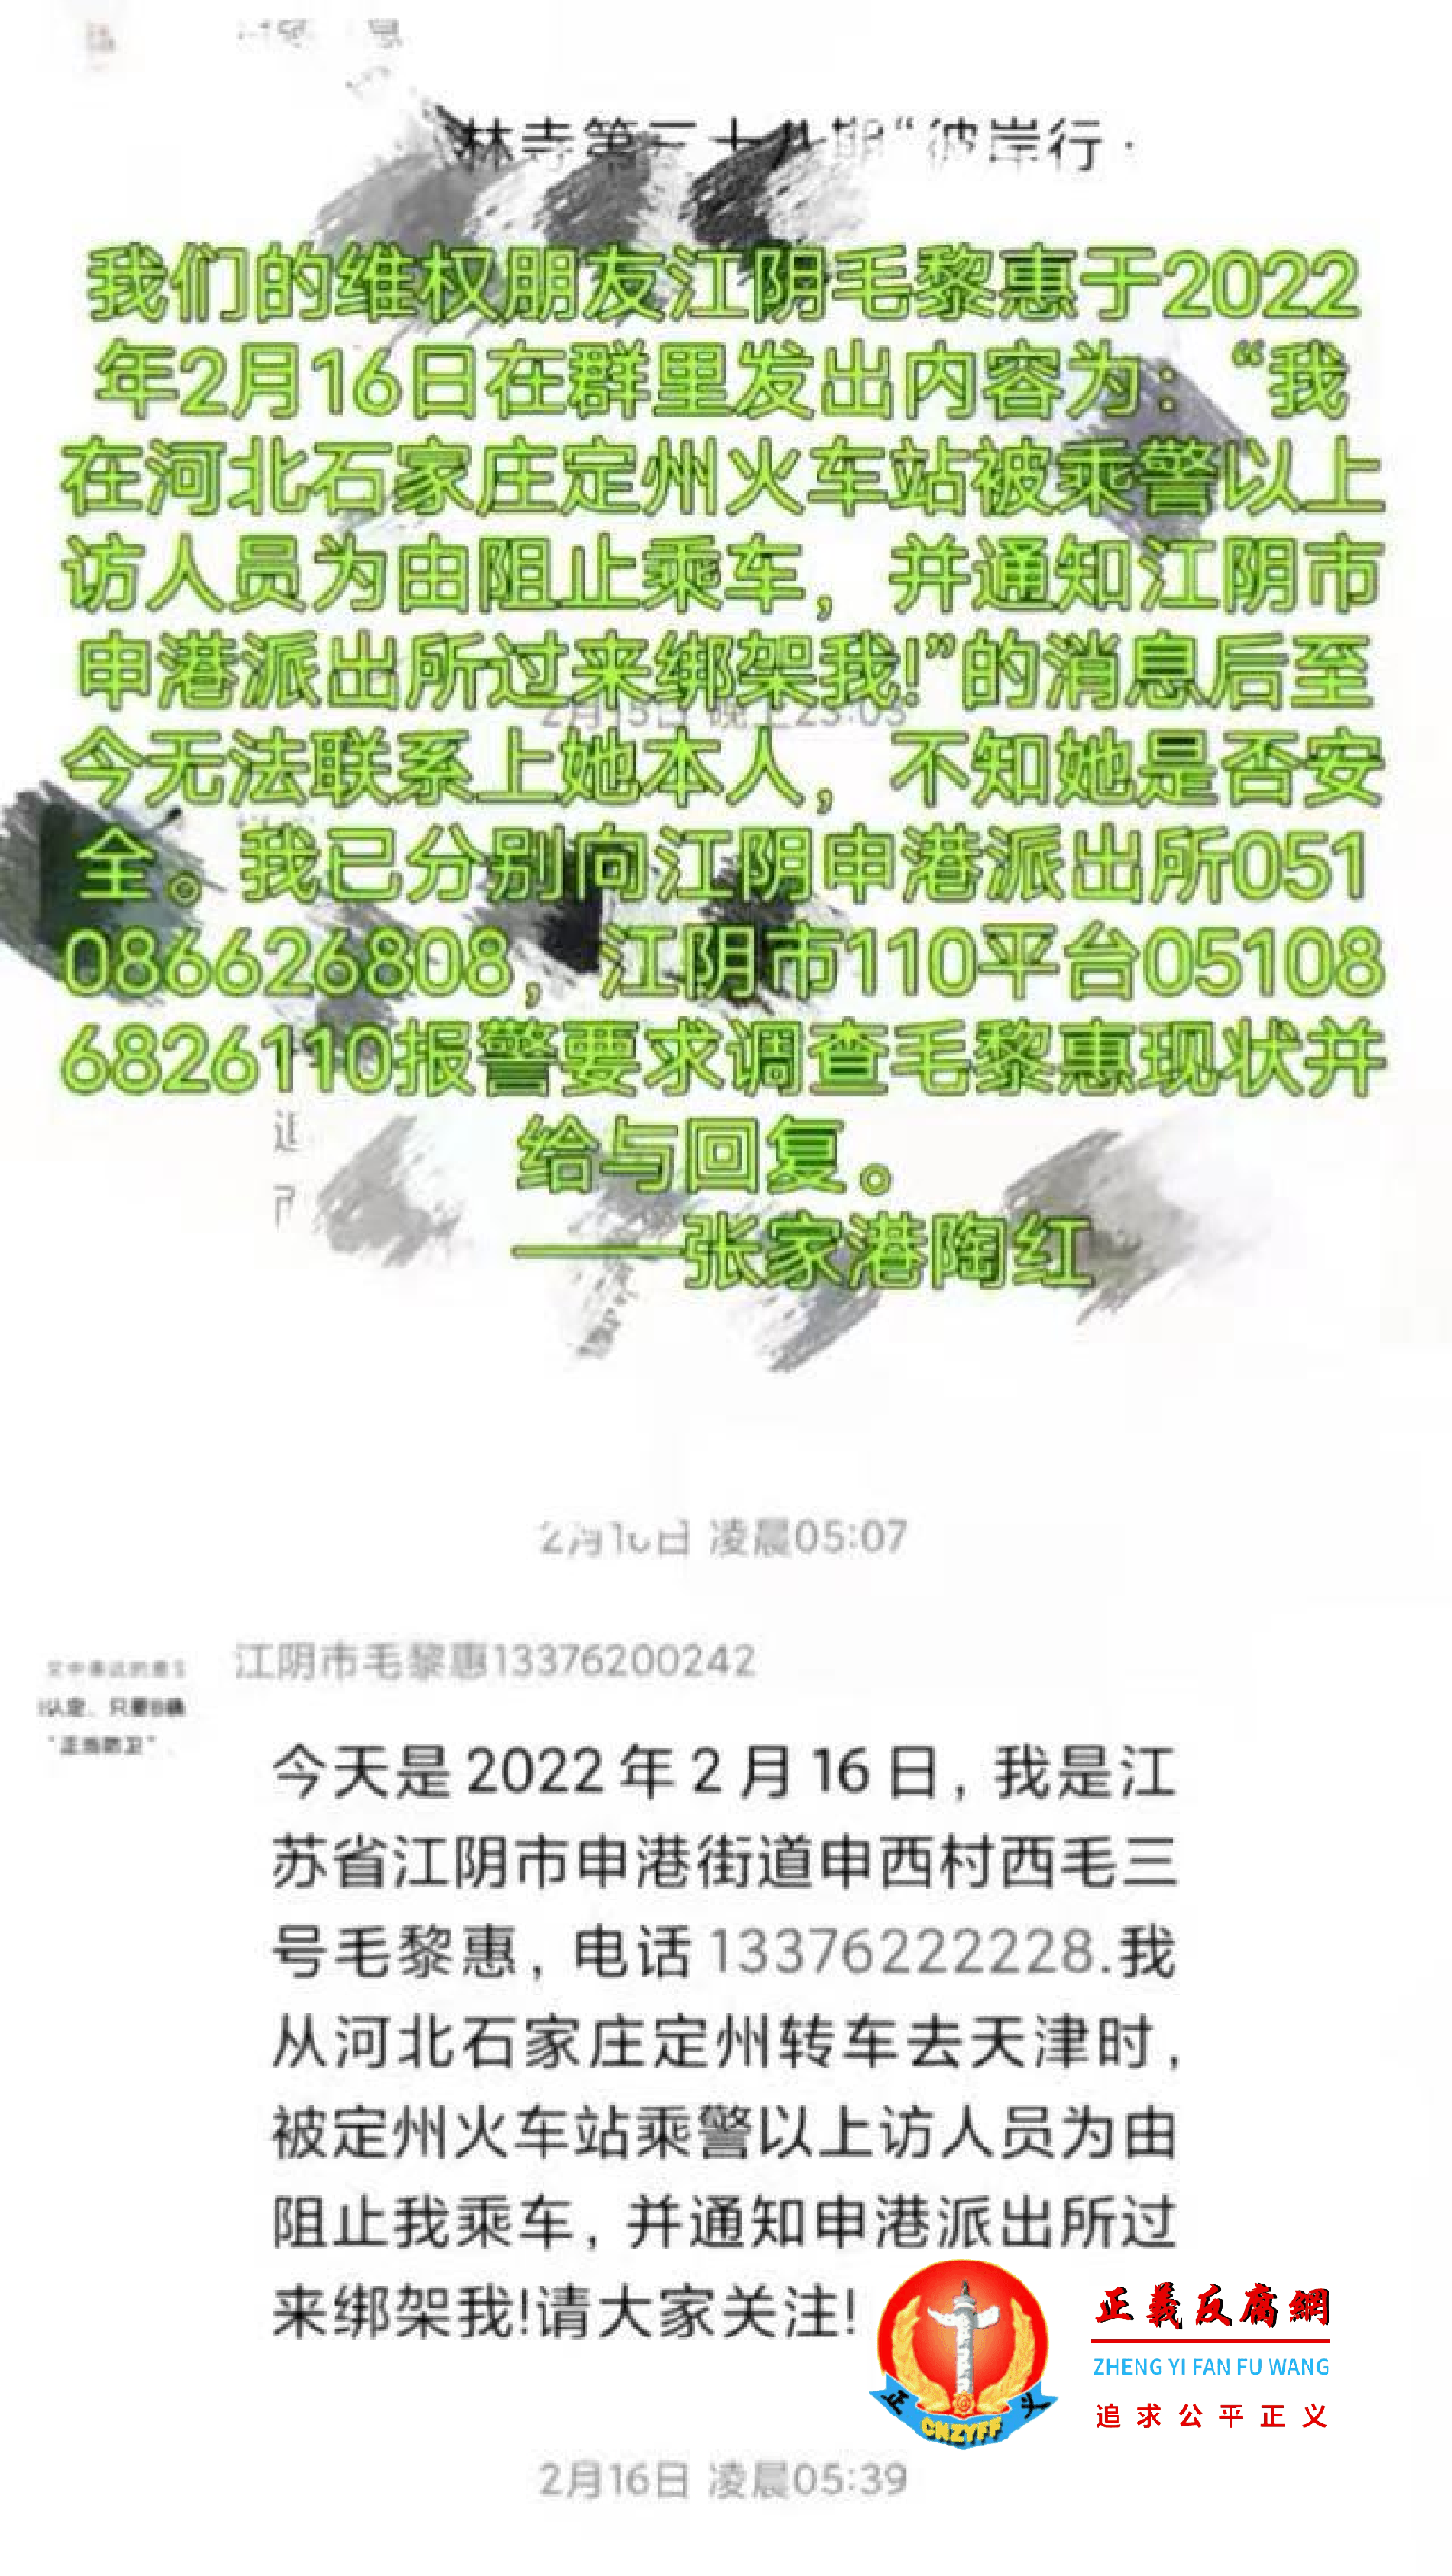 毛黎惠于2022年2月16日在微信群里发出遭绑架信息。 (2).png